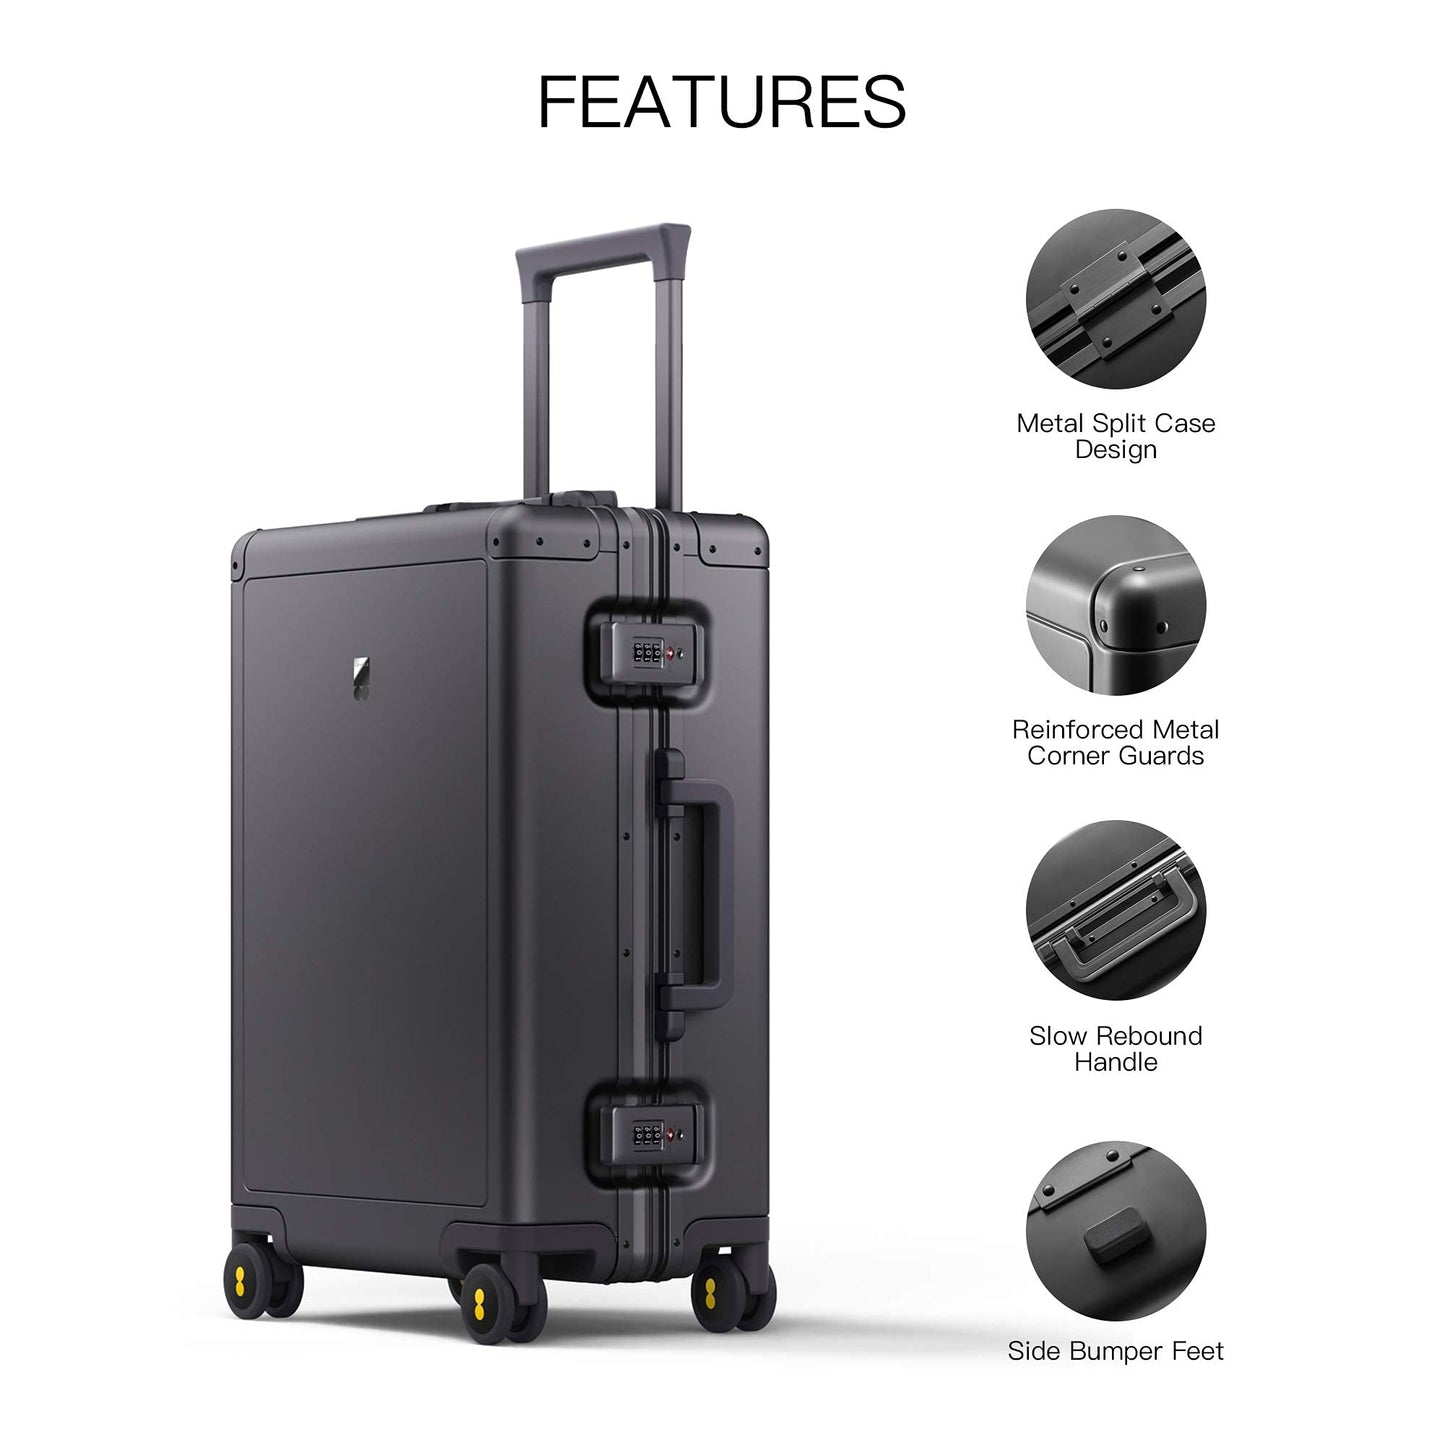 LEVEL8 Aluminum Luggage Carry on Suitcase 20-Inch Hardside Spinner Luggage Includes 4PCS Travel Organiser Set, Hand Luggage Suitcase, TSA Locks(56cm, 35.5L,Grey)